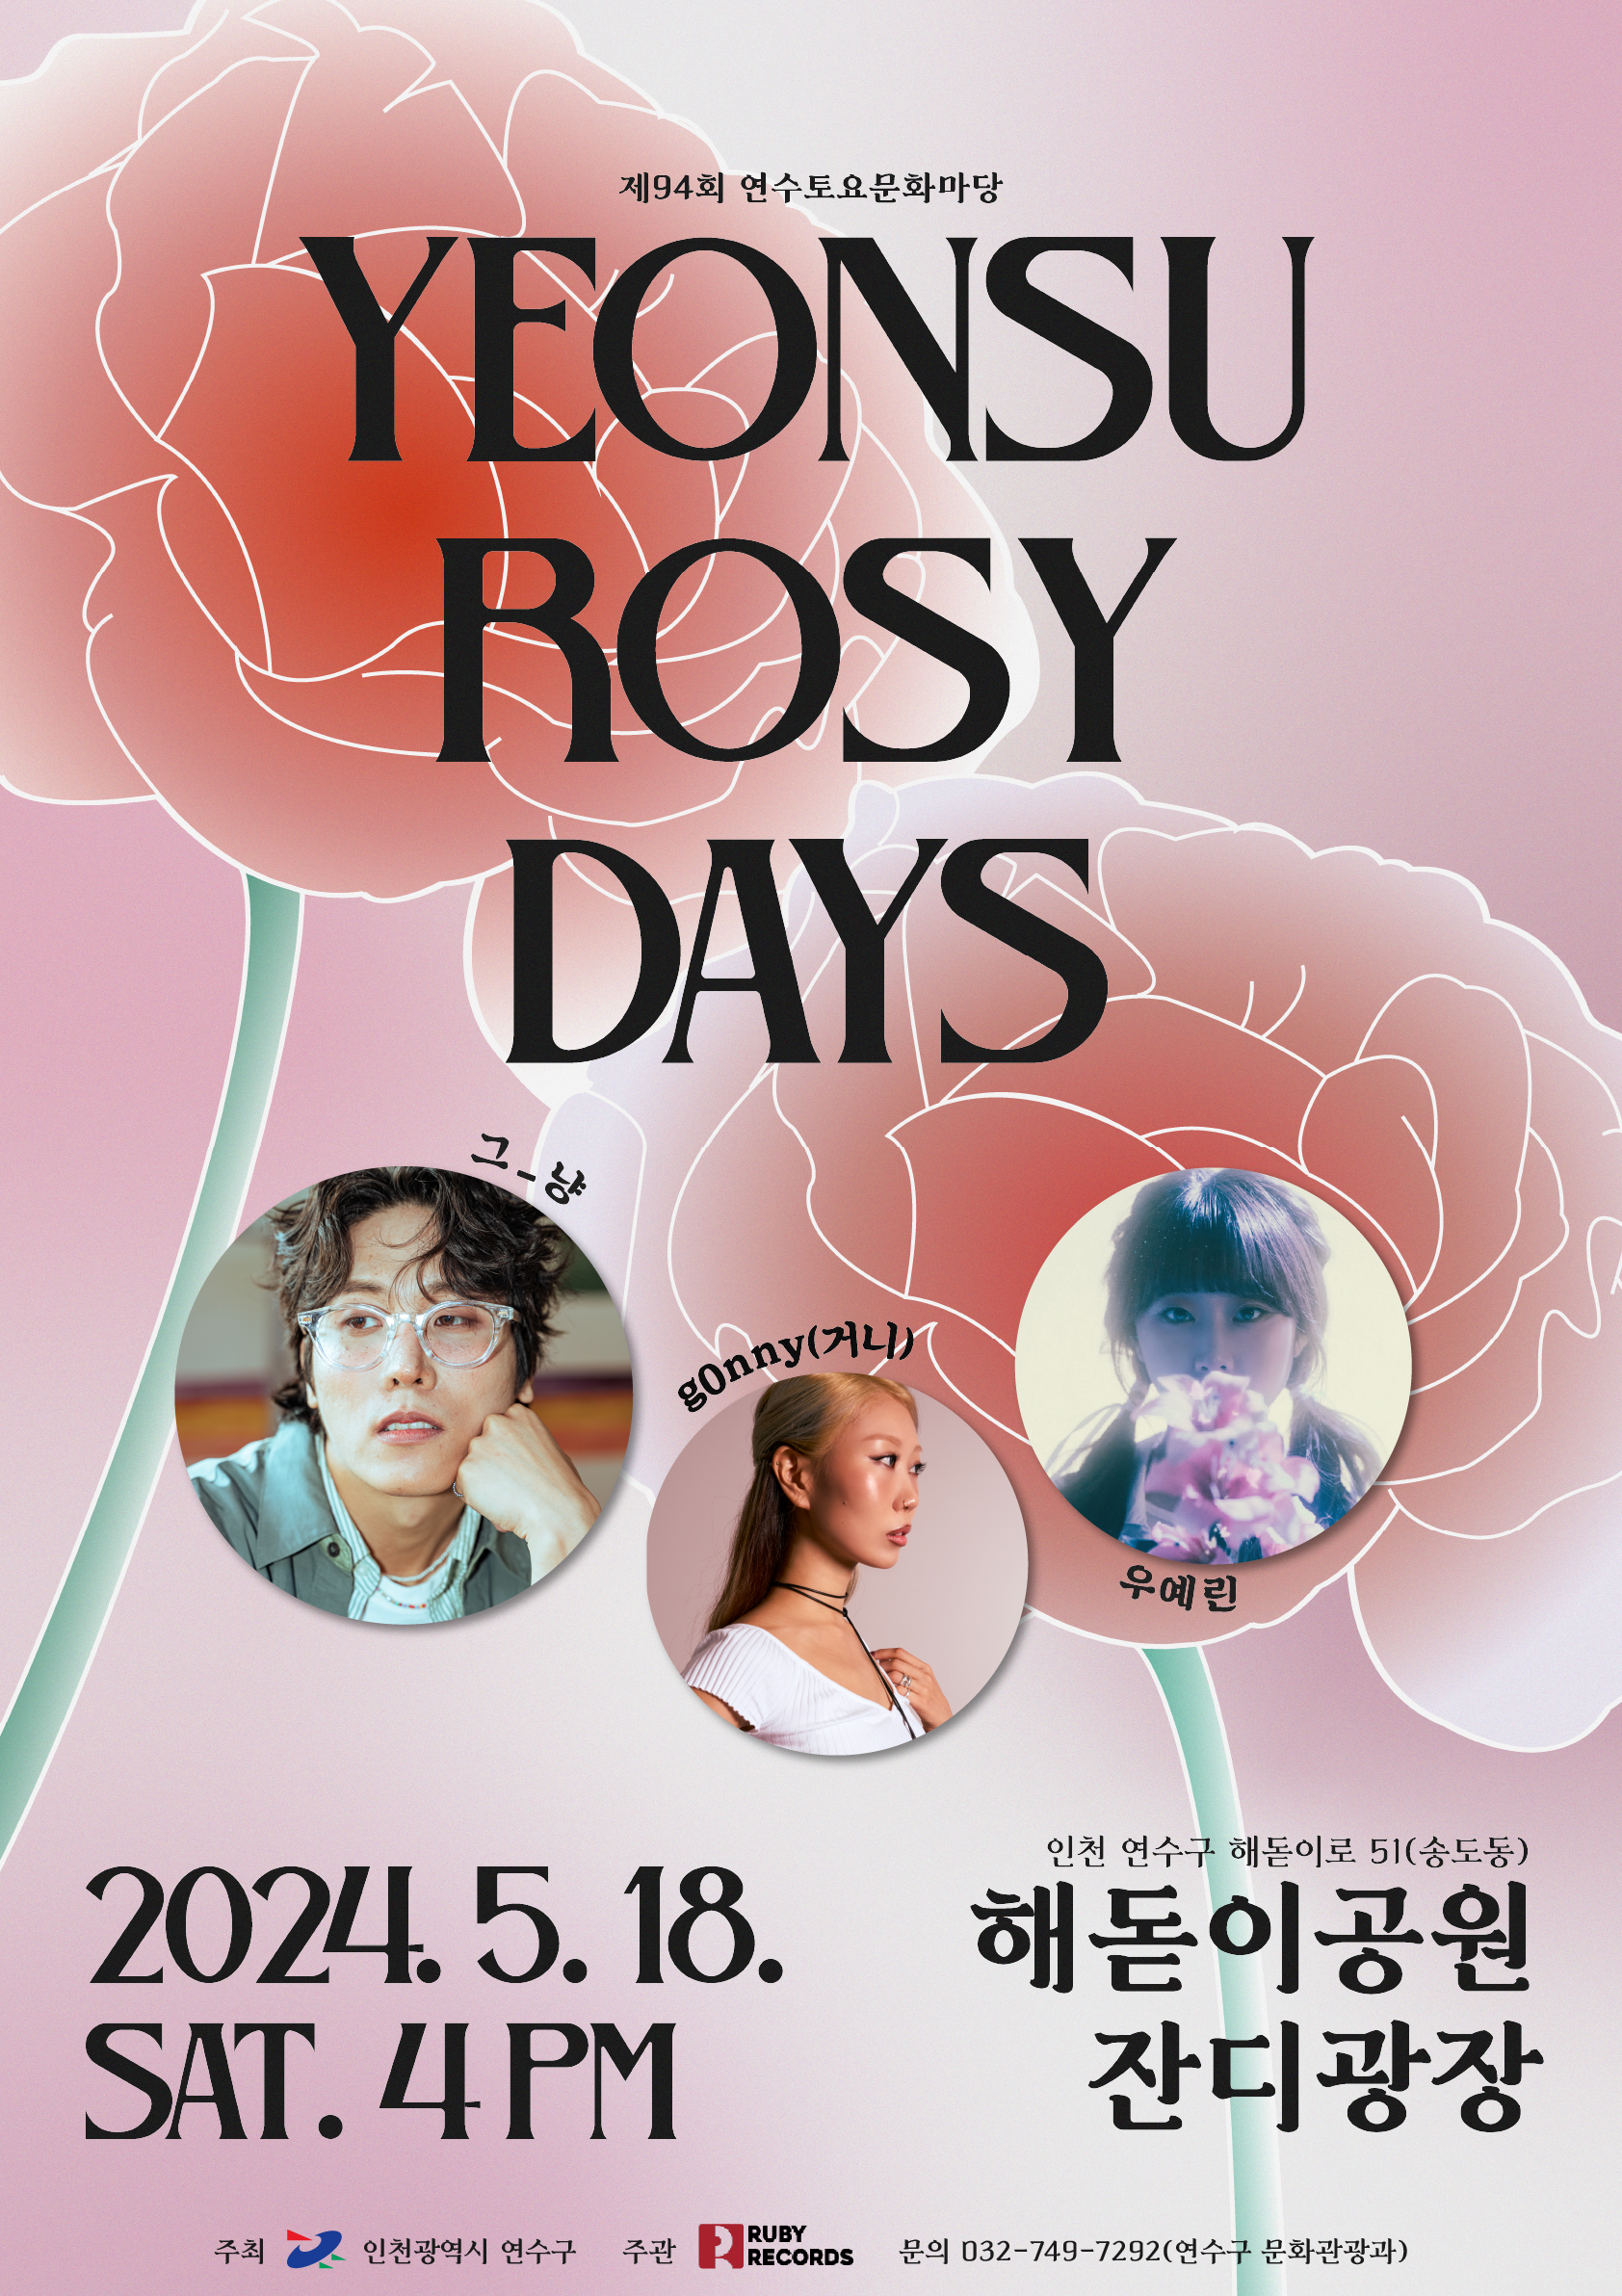 제94회 연수토요문화마당 「YEONSU ROSY DAYS」 개최 안내의 1번째 이미지